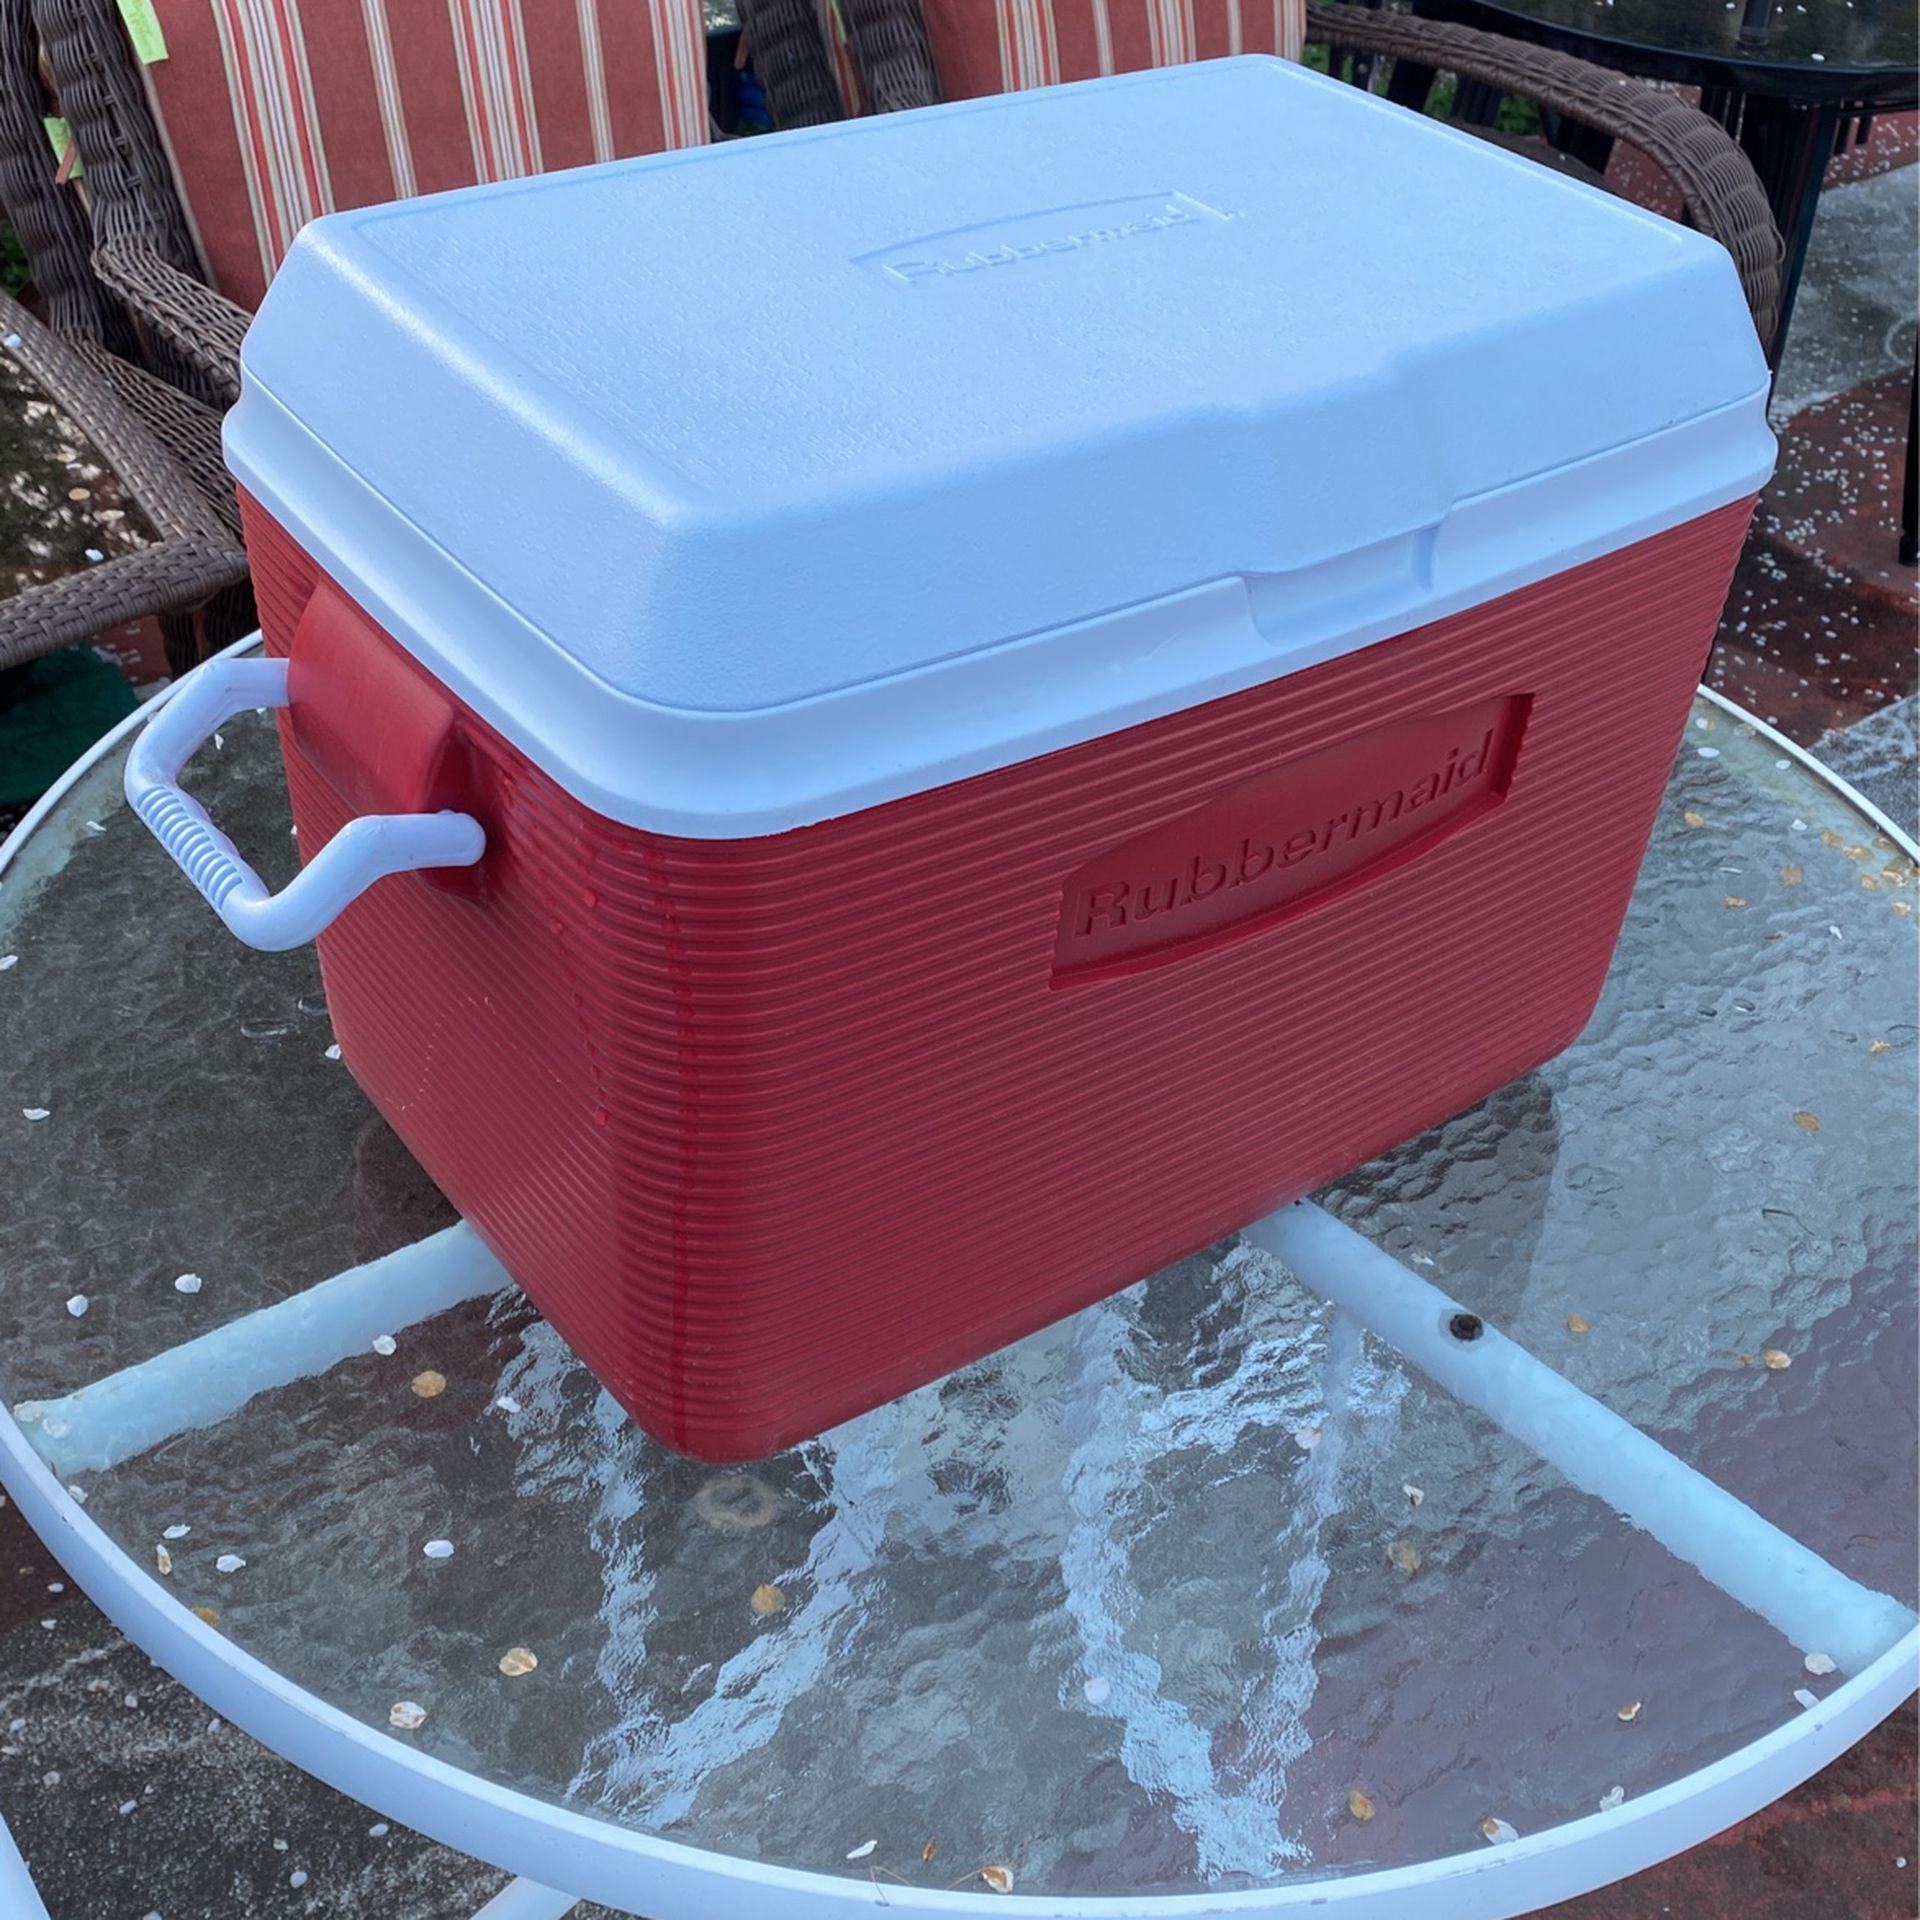 Rubbermaid 48 quart cooler/ice chest